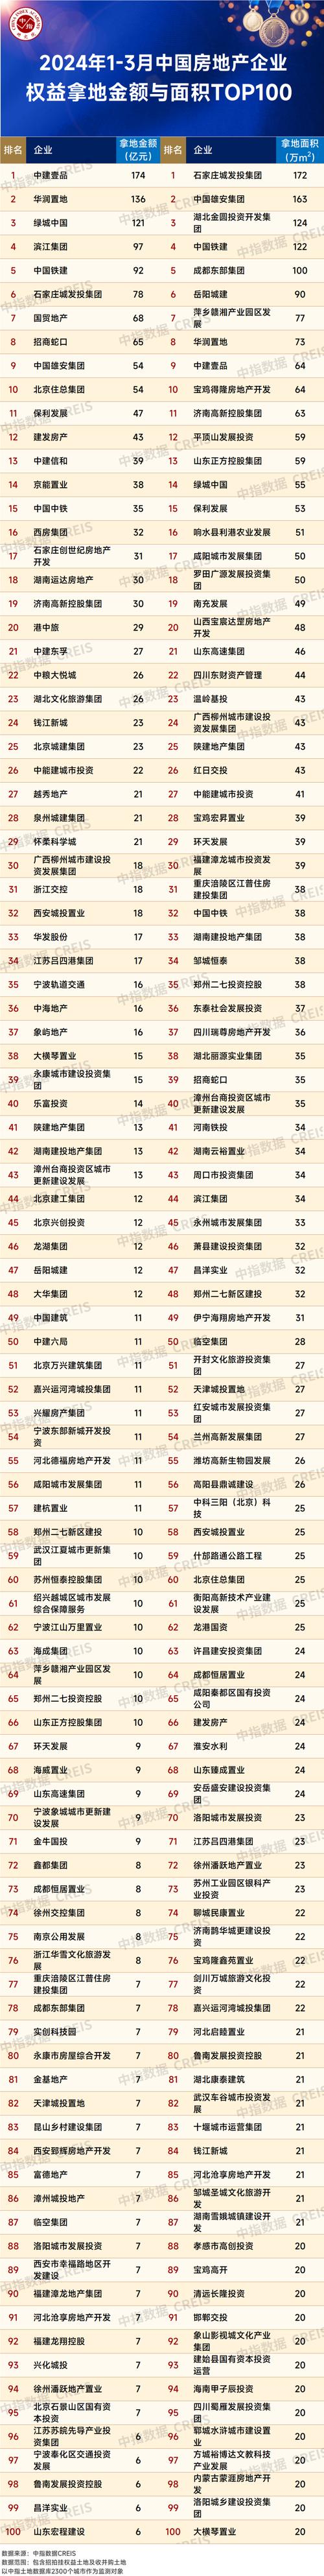 中国最大的房地产开发公司排名